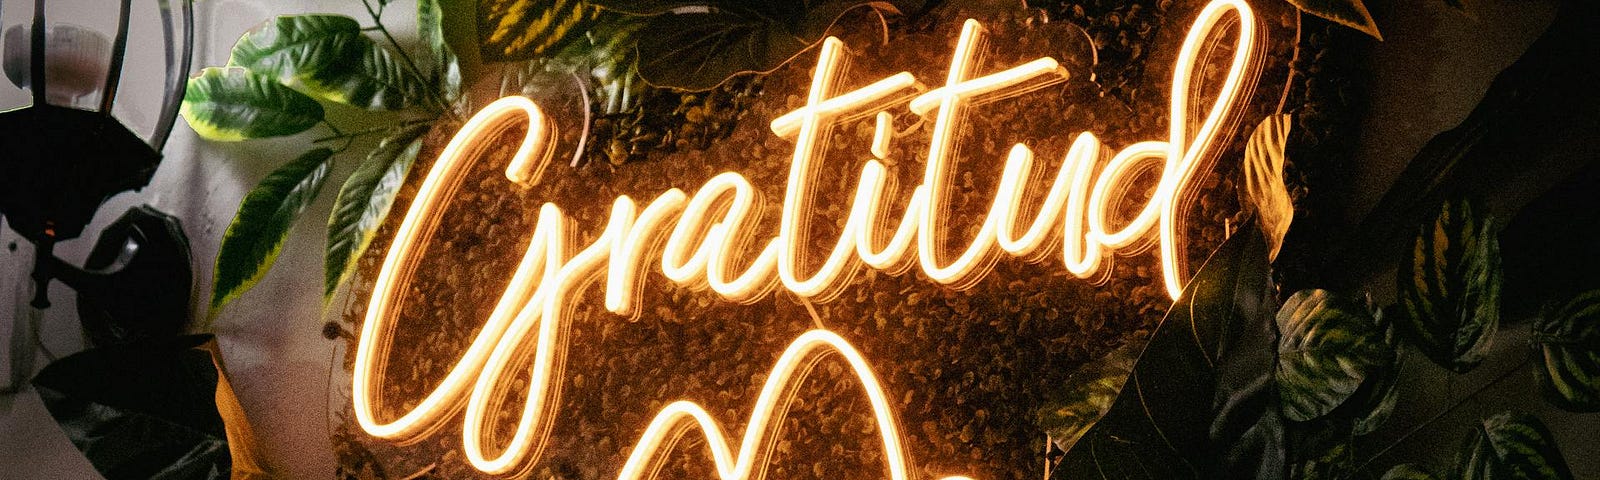 The word Gratitud in neon lights over plants.